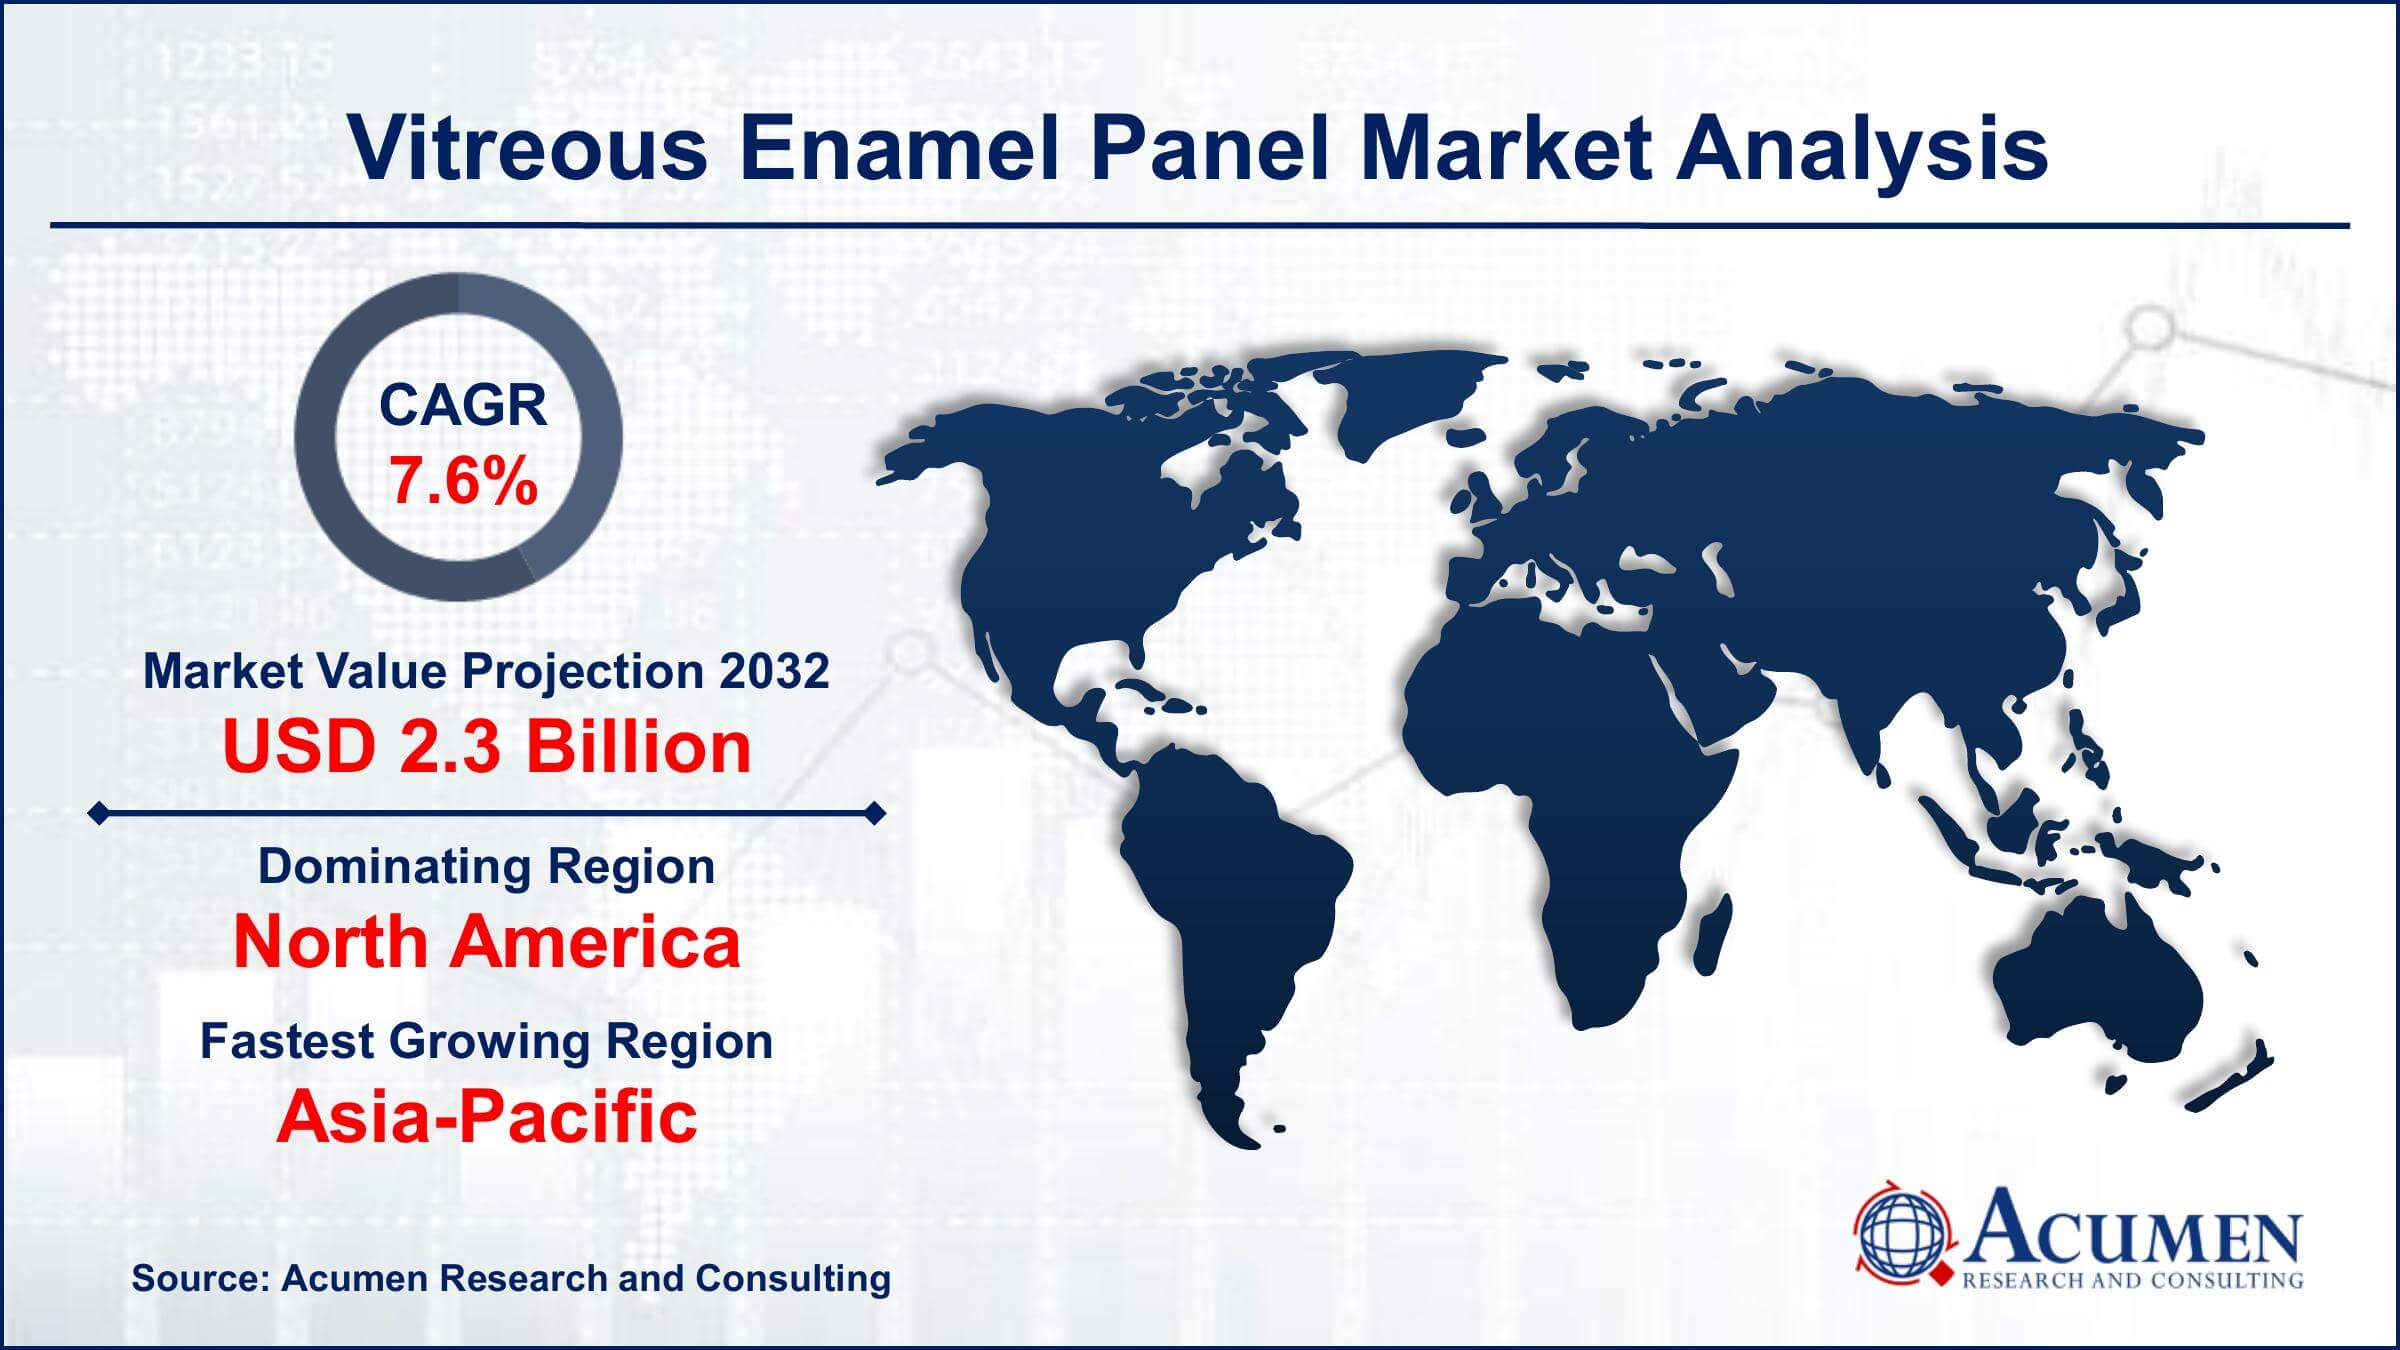 Global Vitreous Enamel Panel Market Trends